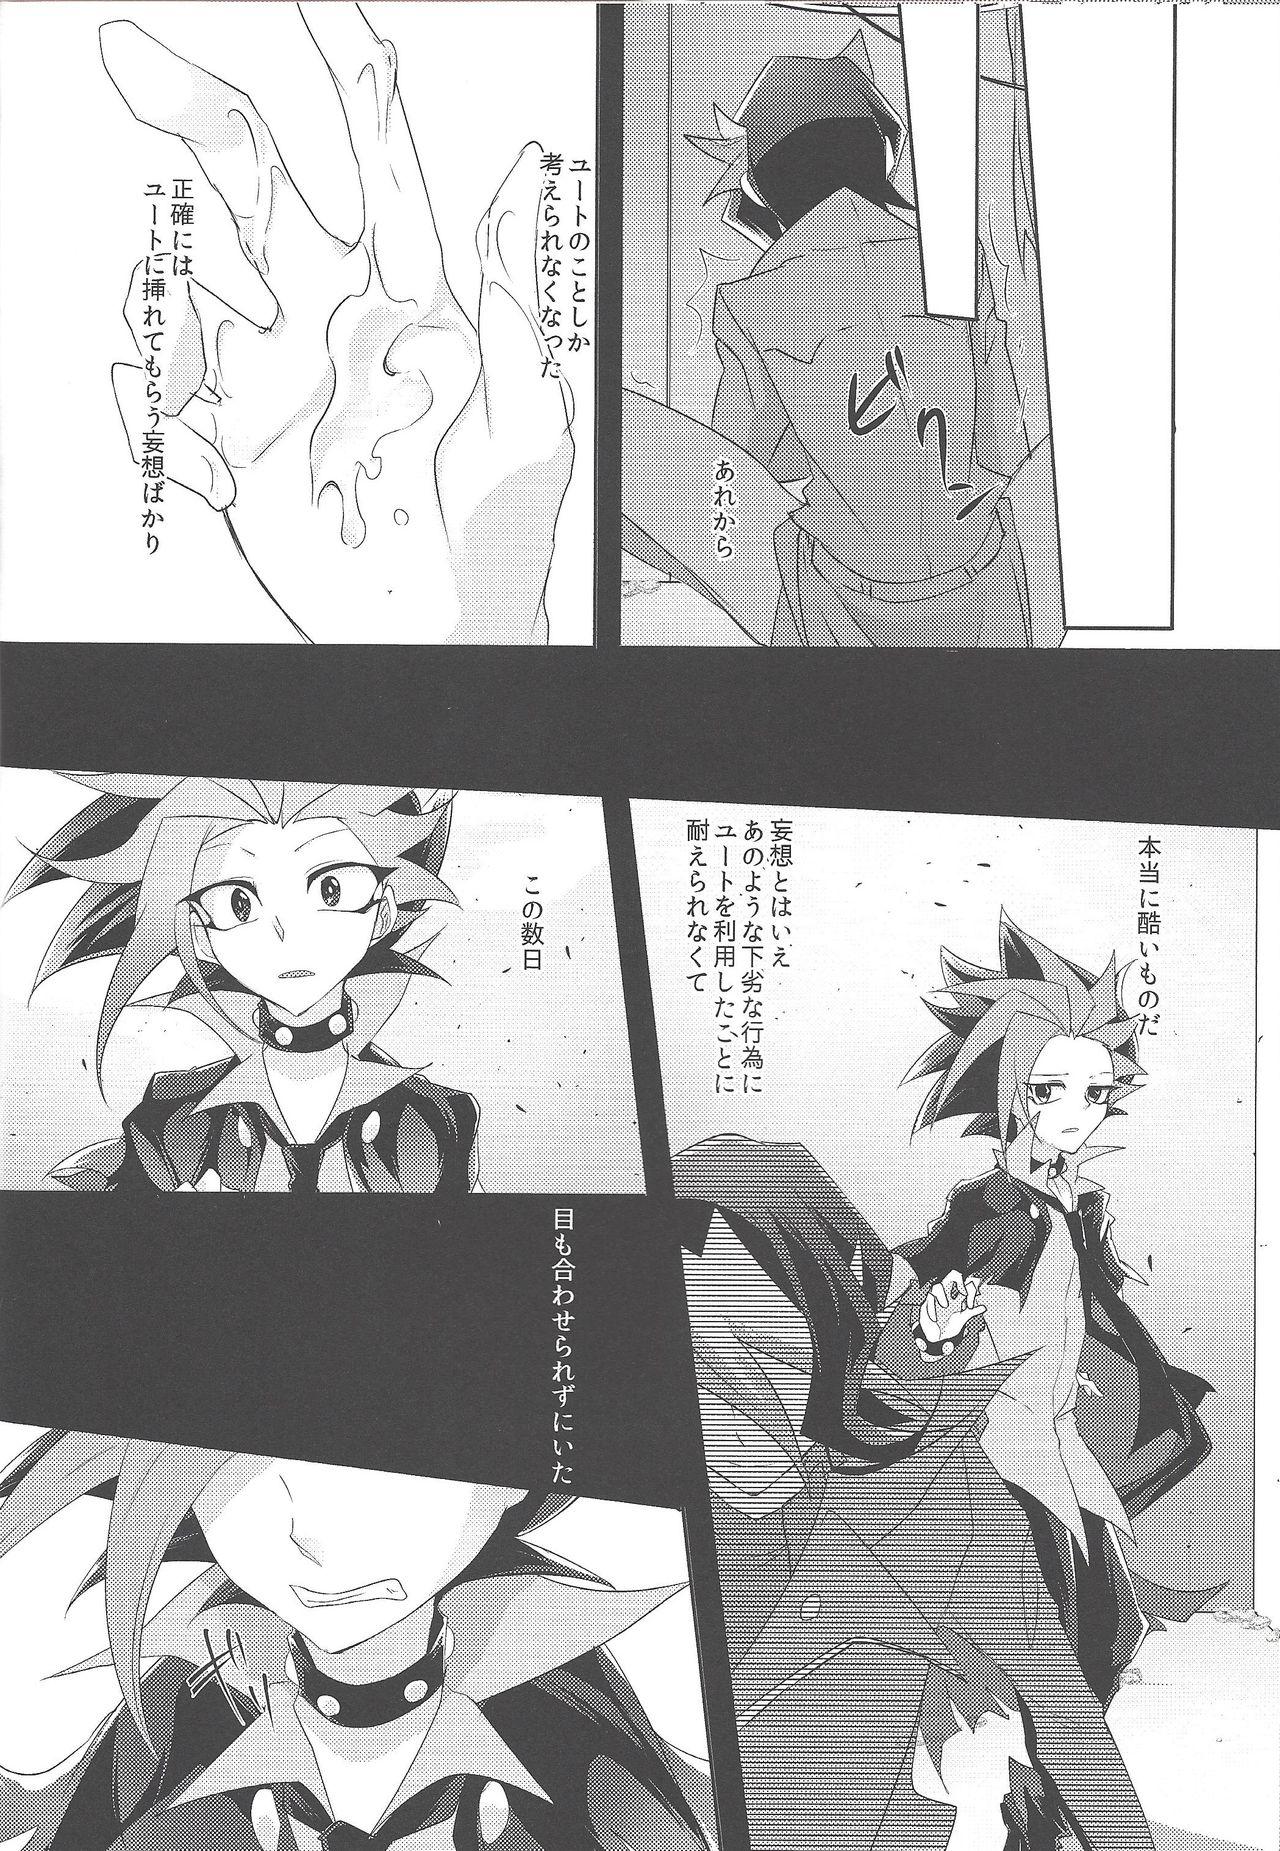 Uncensored Kimi to kokoro no risōkyō - Yu-gi-oh arc-v POV - Page 13